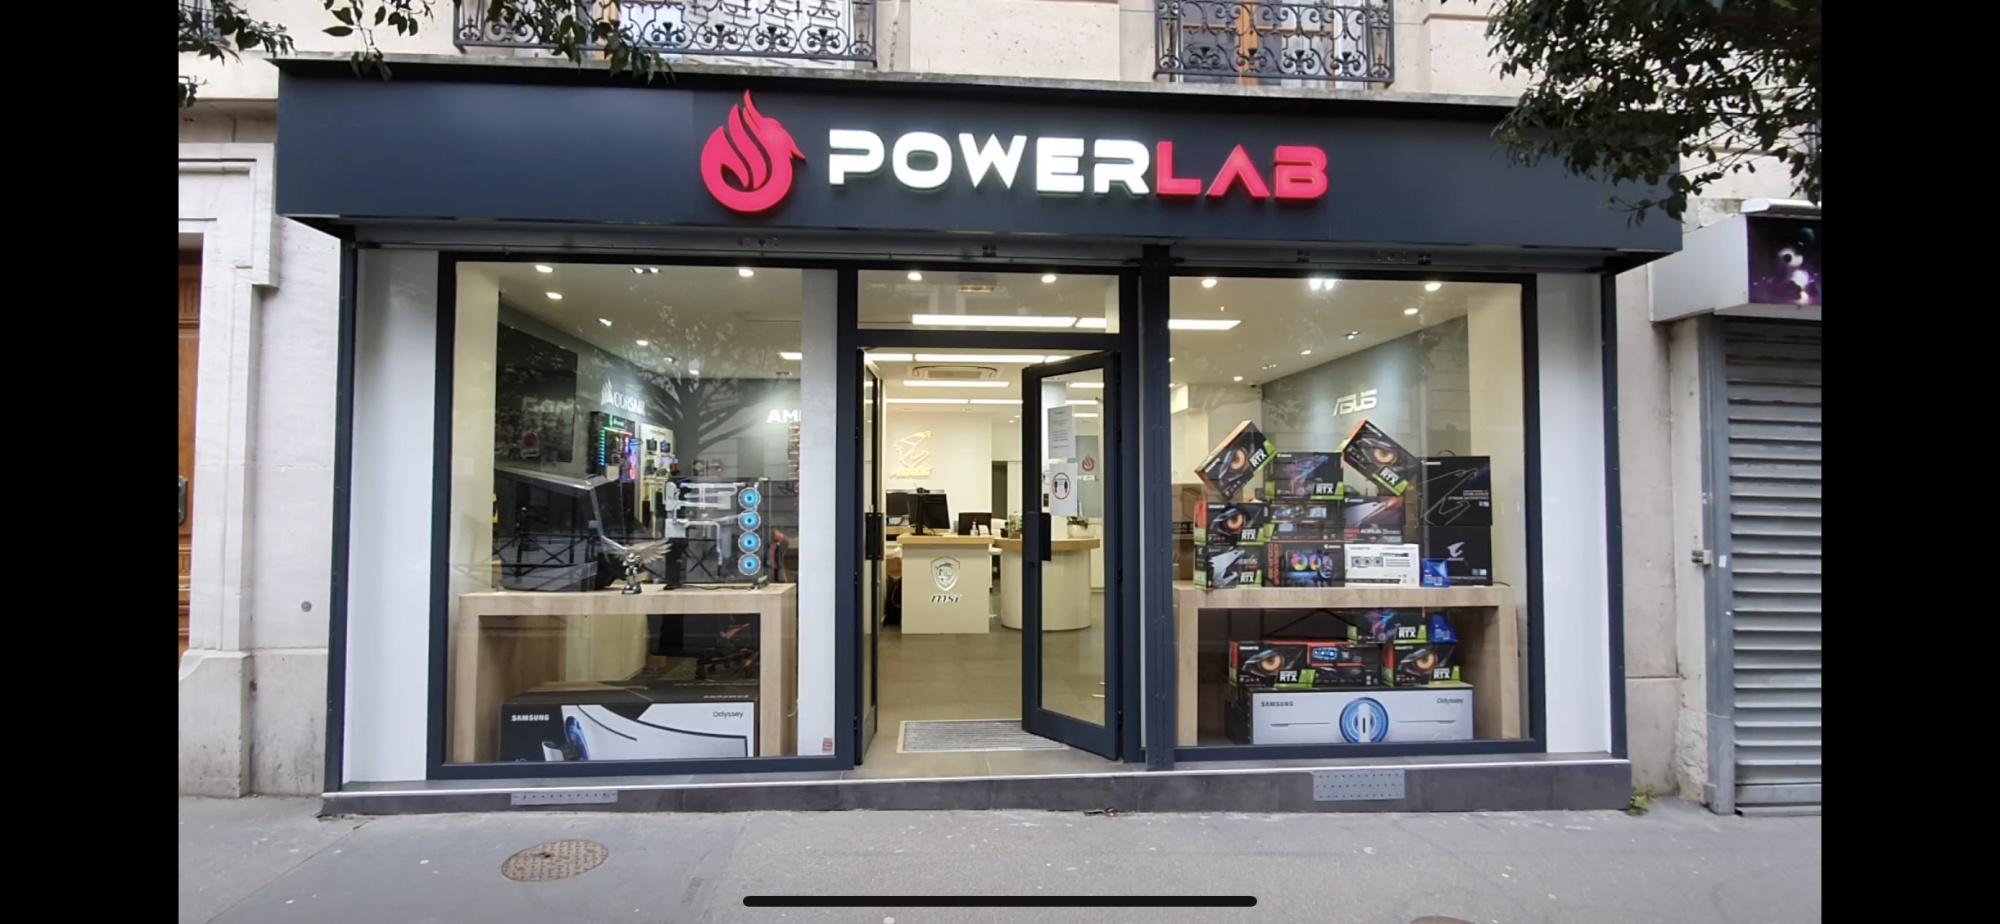 PowerLab - Votre Atelier Performances - PC Gaming et PC Professionnels